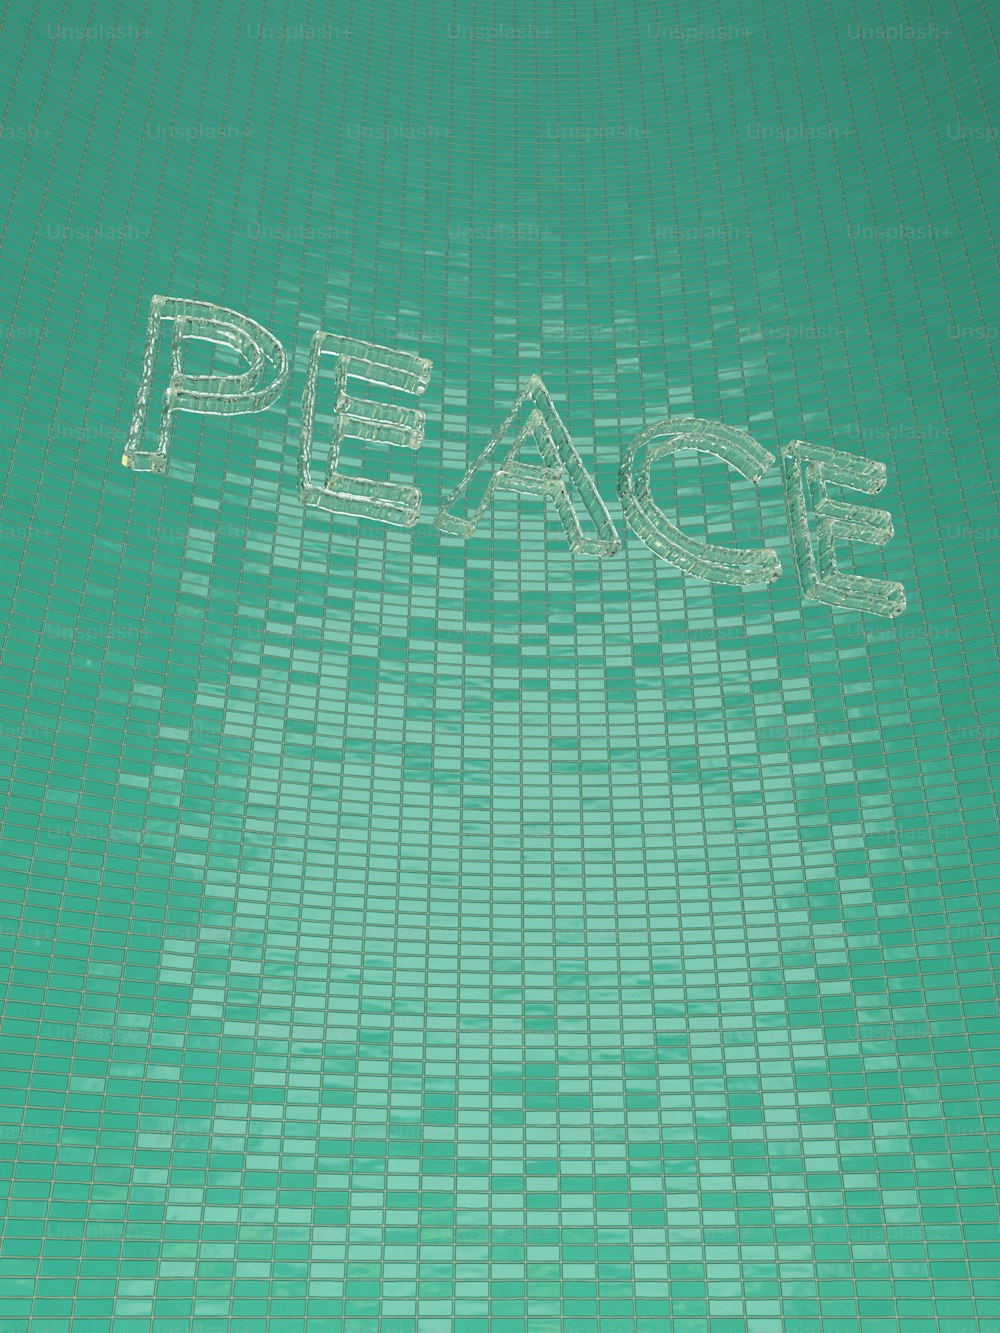 평화라는 단어가 적힌 서핑 보드